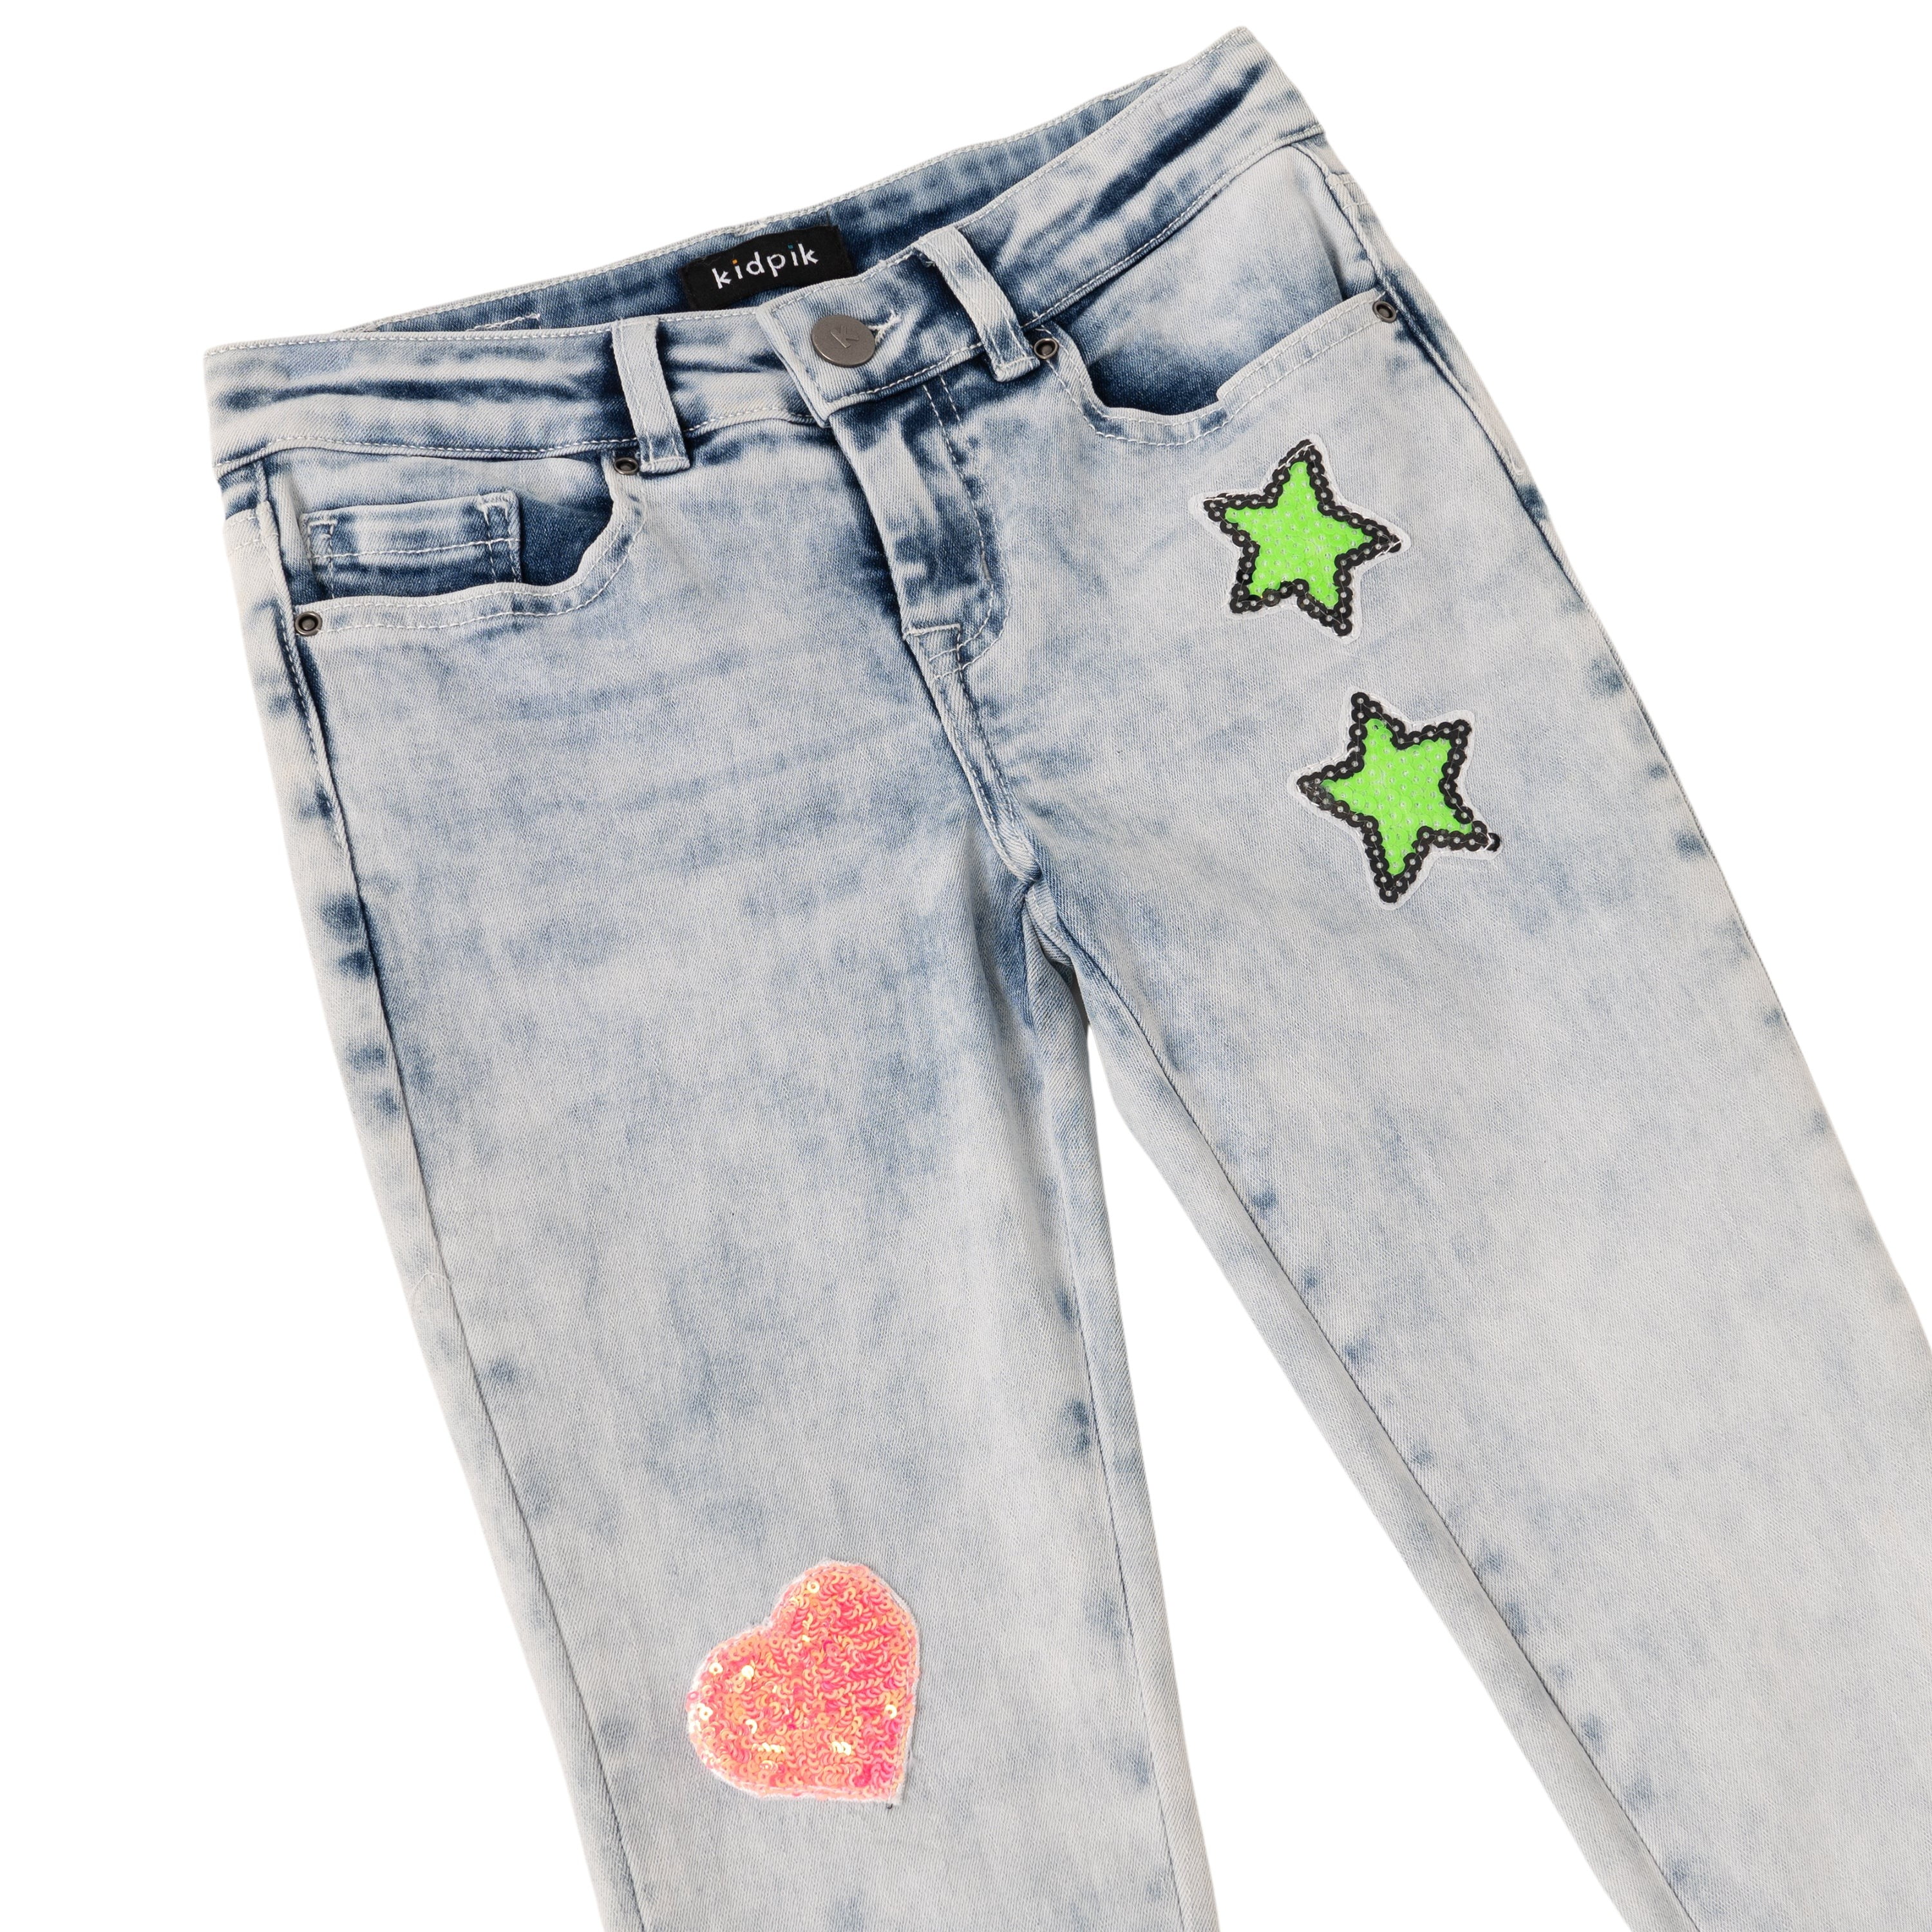 KIDPIK Girls Premium Denim, 5 Pocket Sequin Patch Denim Skinny Jean, Size 4